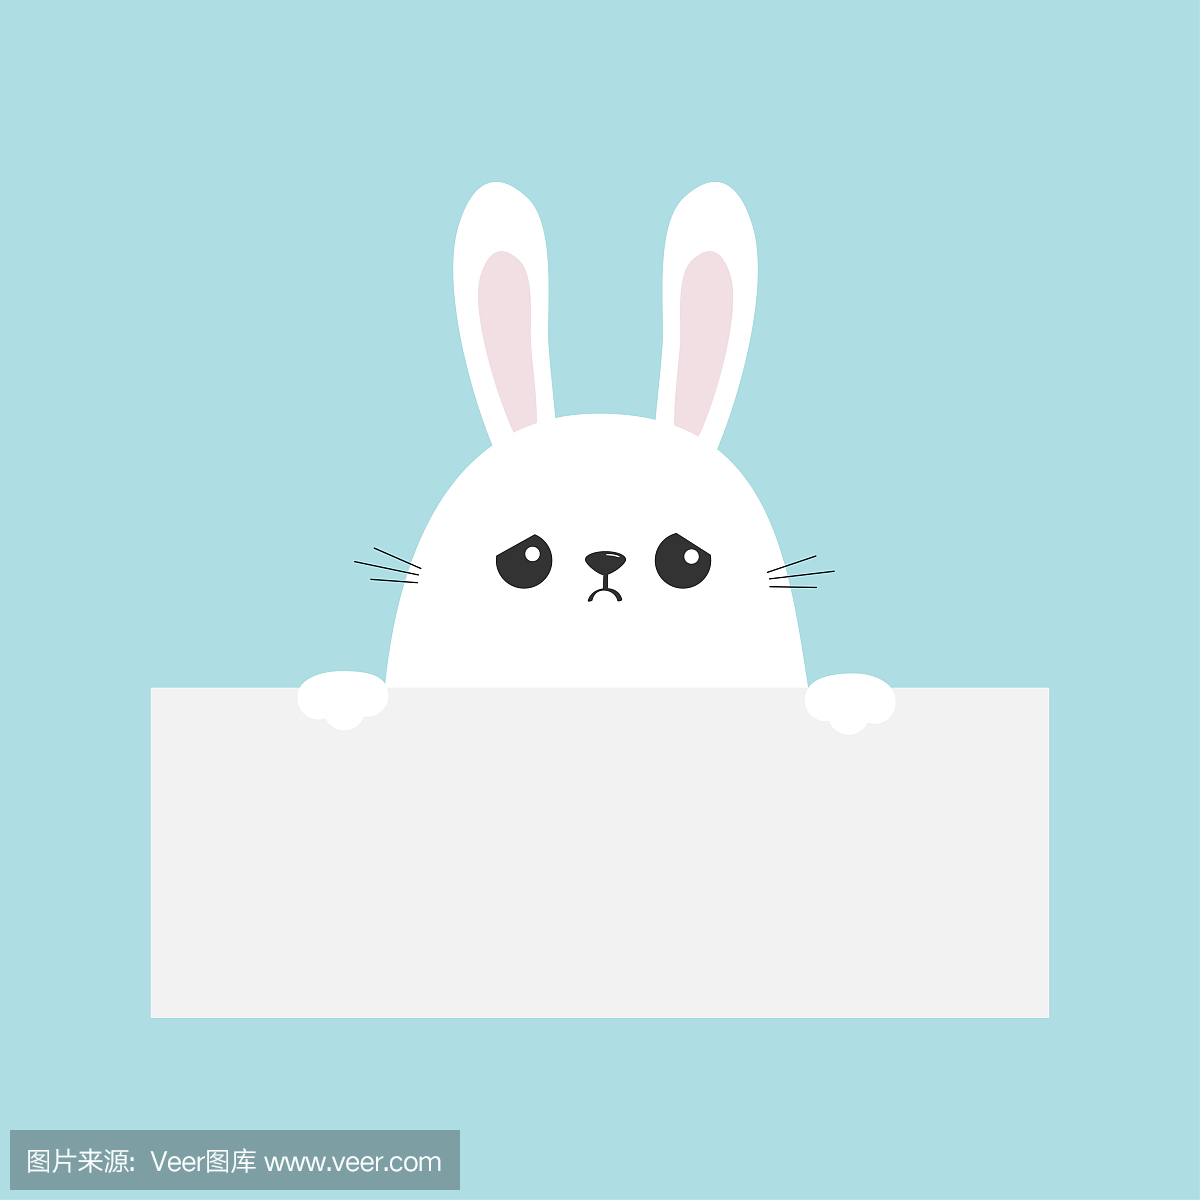 空的纸板模板上挂着的白色悲伤兔子兔子。有趣